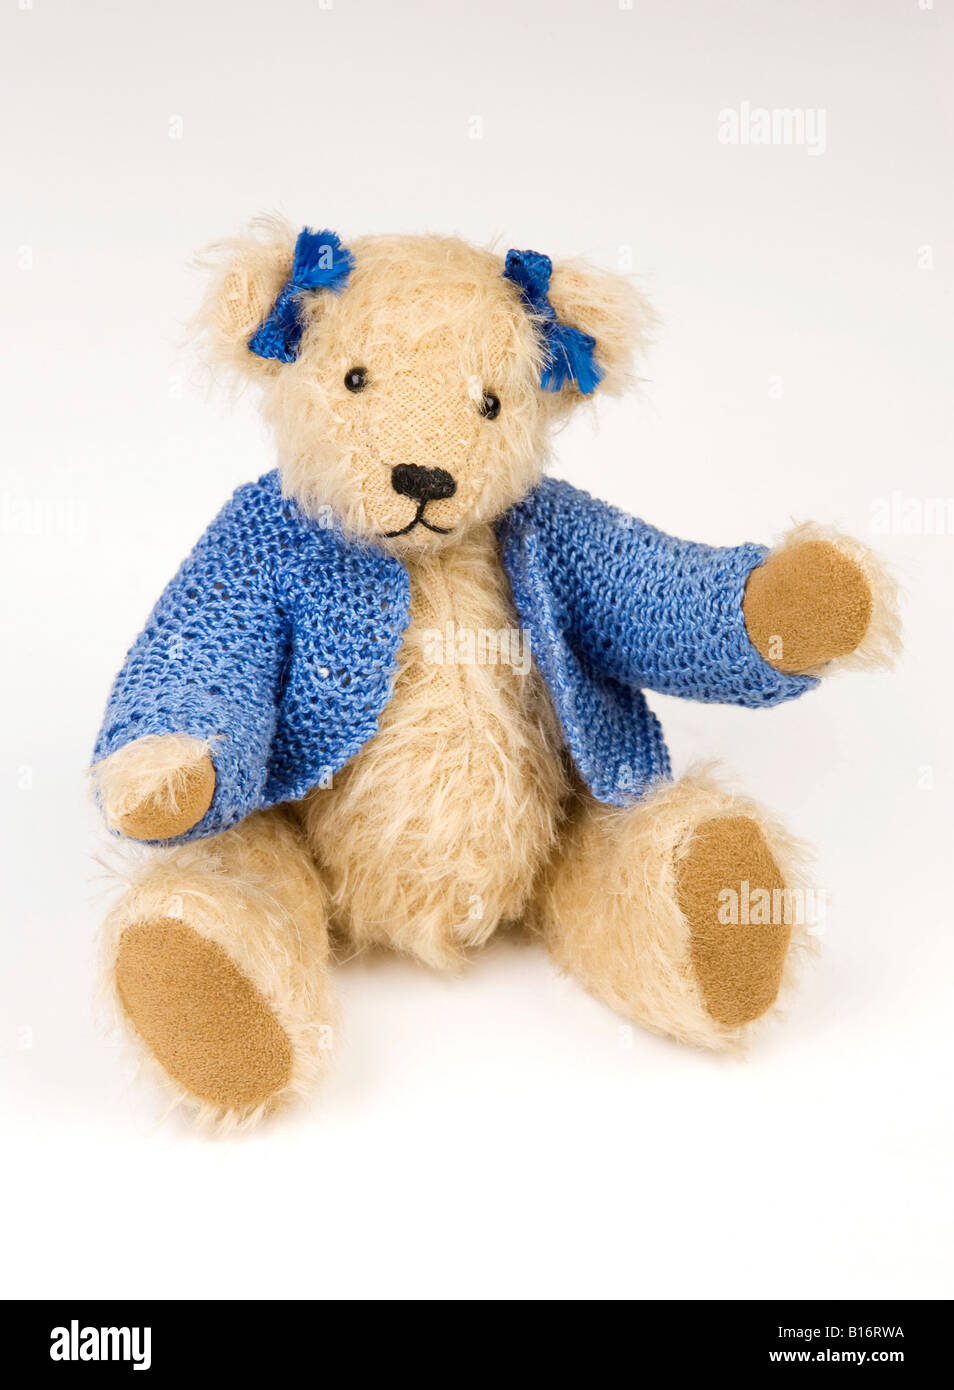 adorable teddy bear Stock Photo